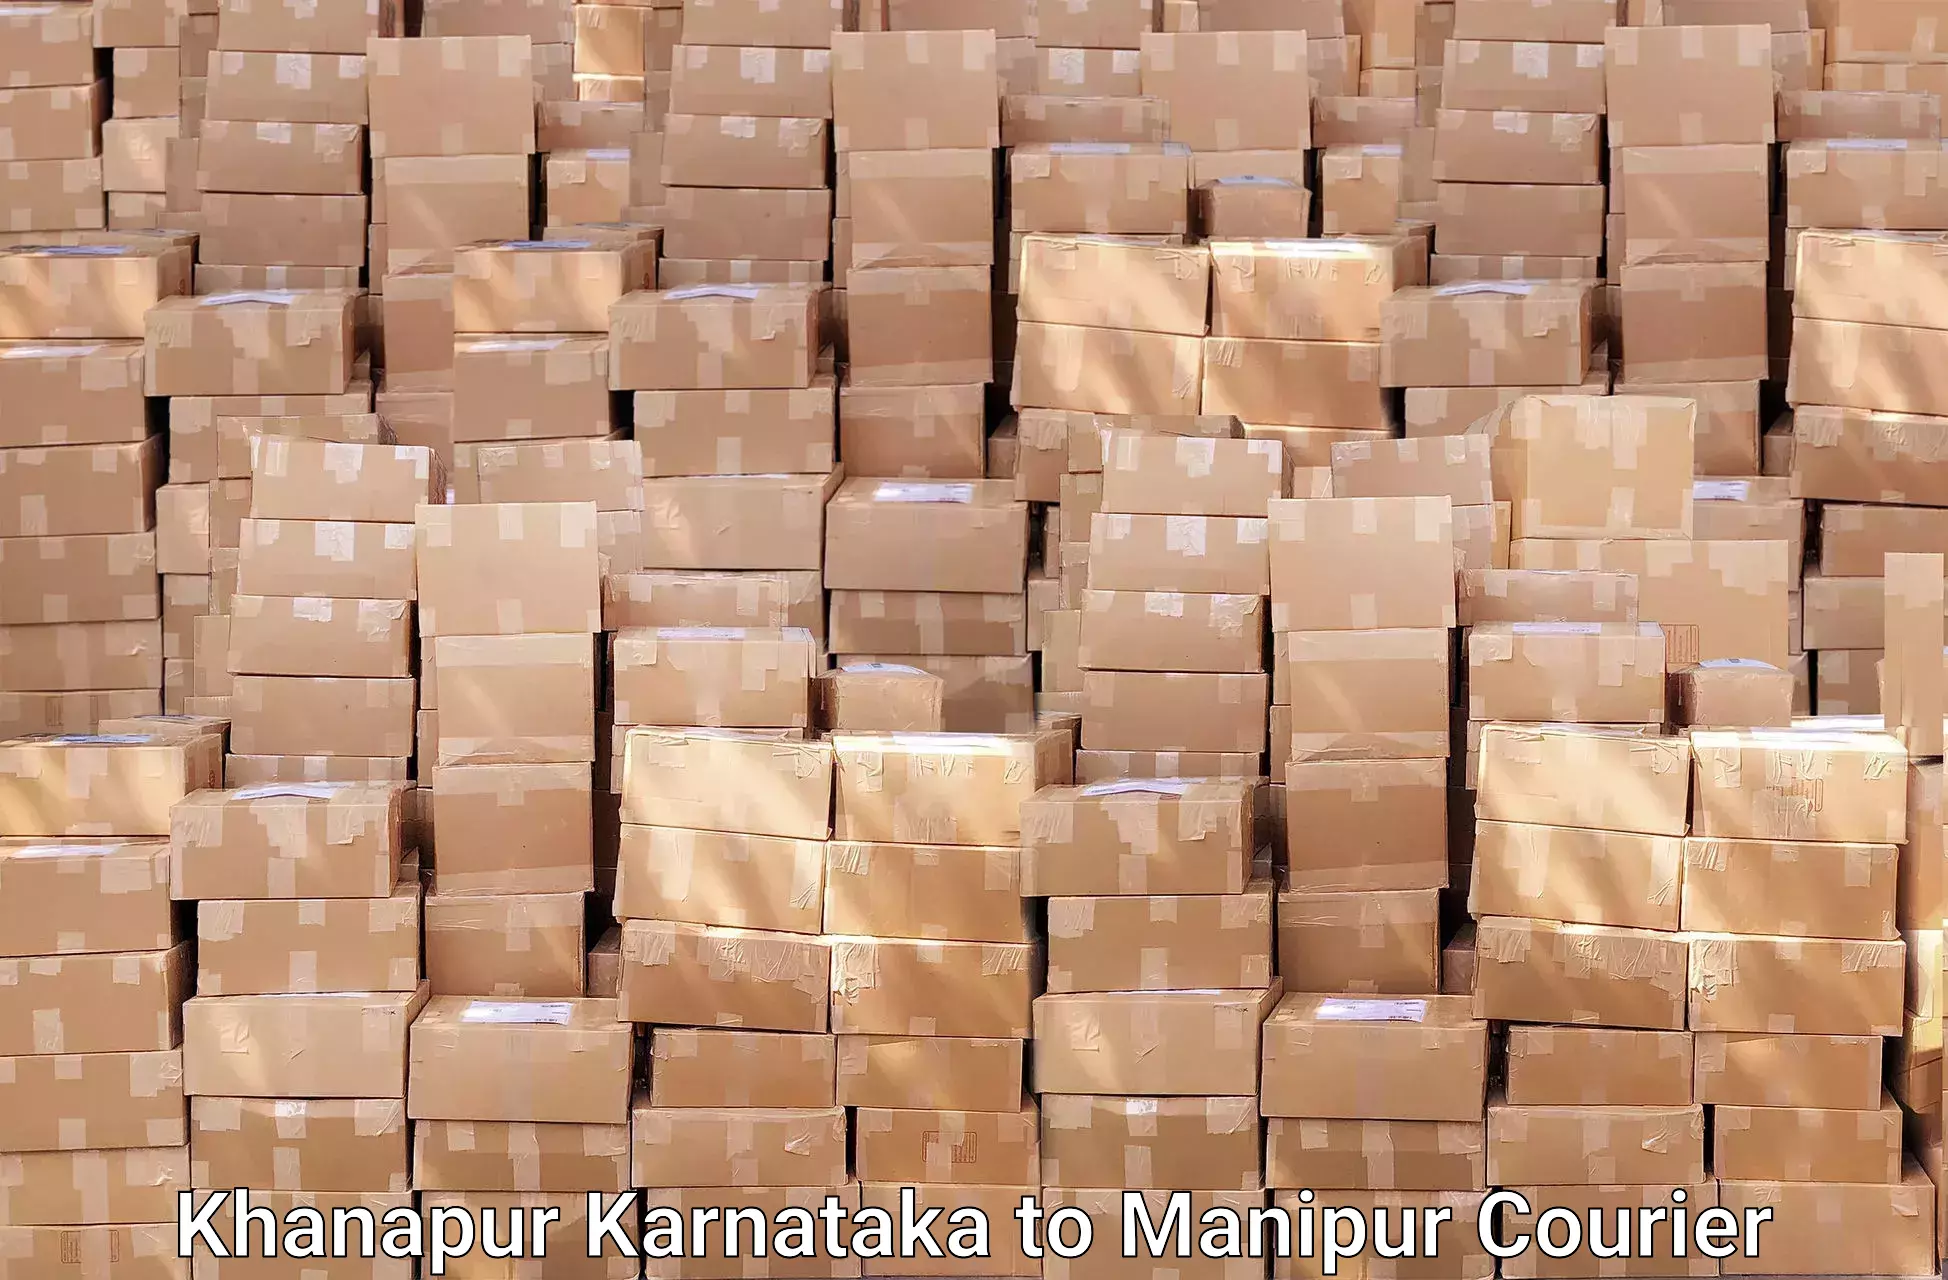 Furniture transport service Khanapur Karnataka to Churachandpur